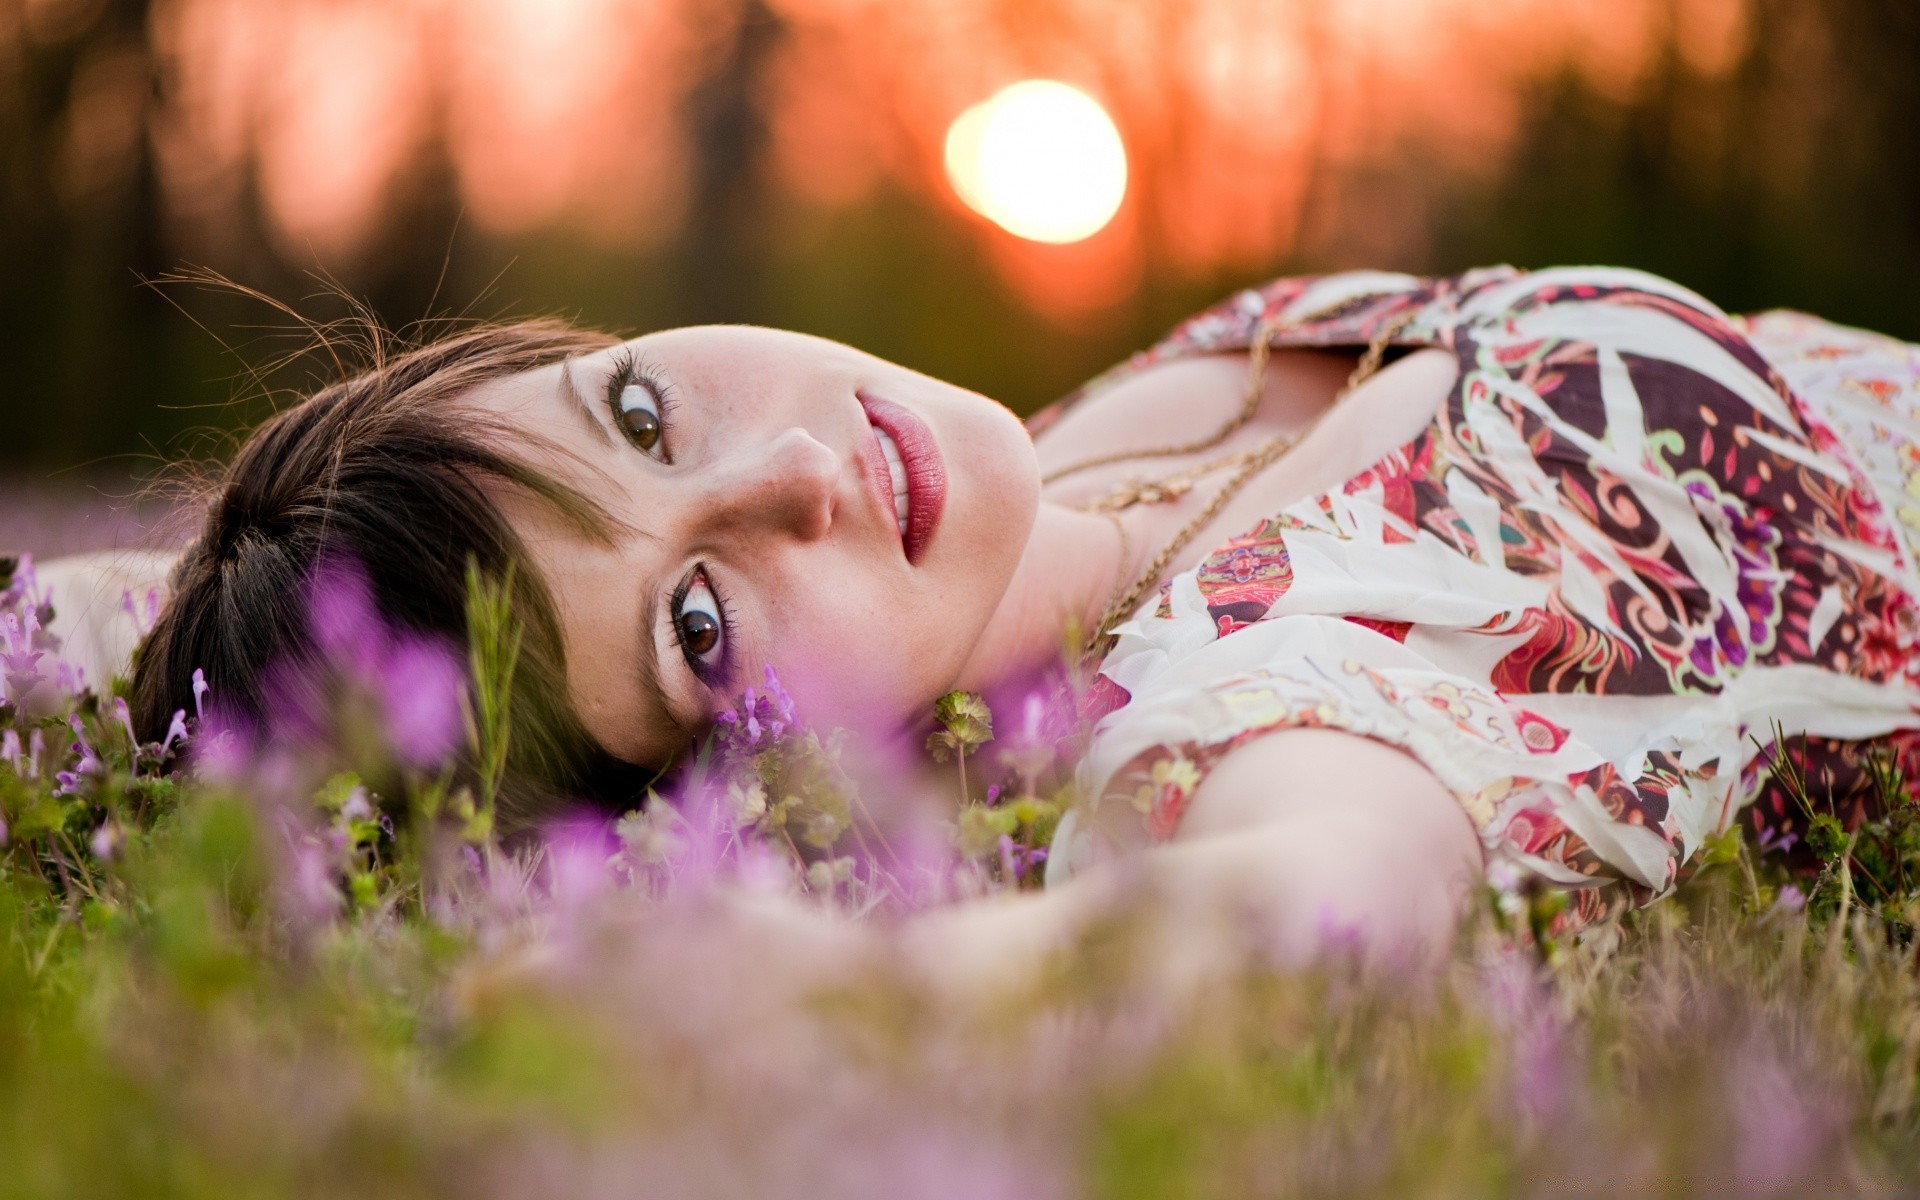 другие девушки природа девушка трава цветок лето женщина портрет красивые мода улыбка на открытом воздухе парк поле солнце мечта релаксация милые любовь модель